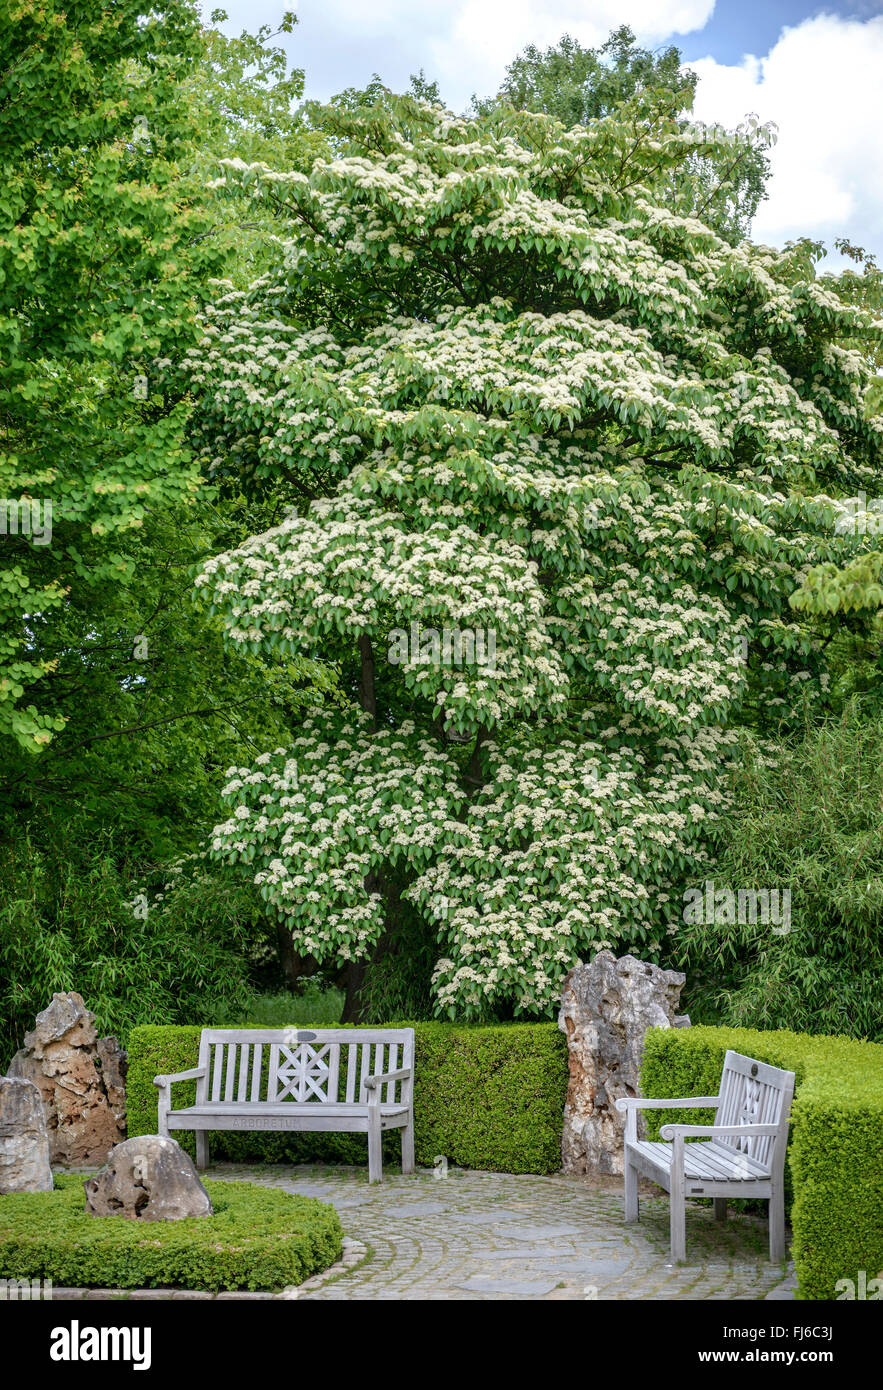 Feuilles de rechange (Cornus alternifolia), l'Allemagne, d'arbres en fleurs Banque D'Images